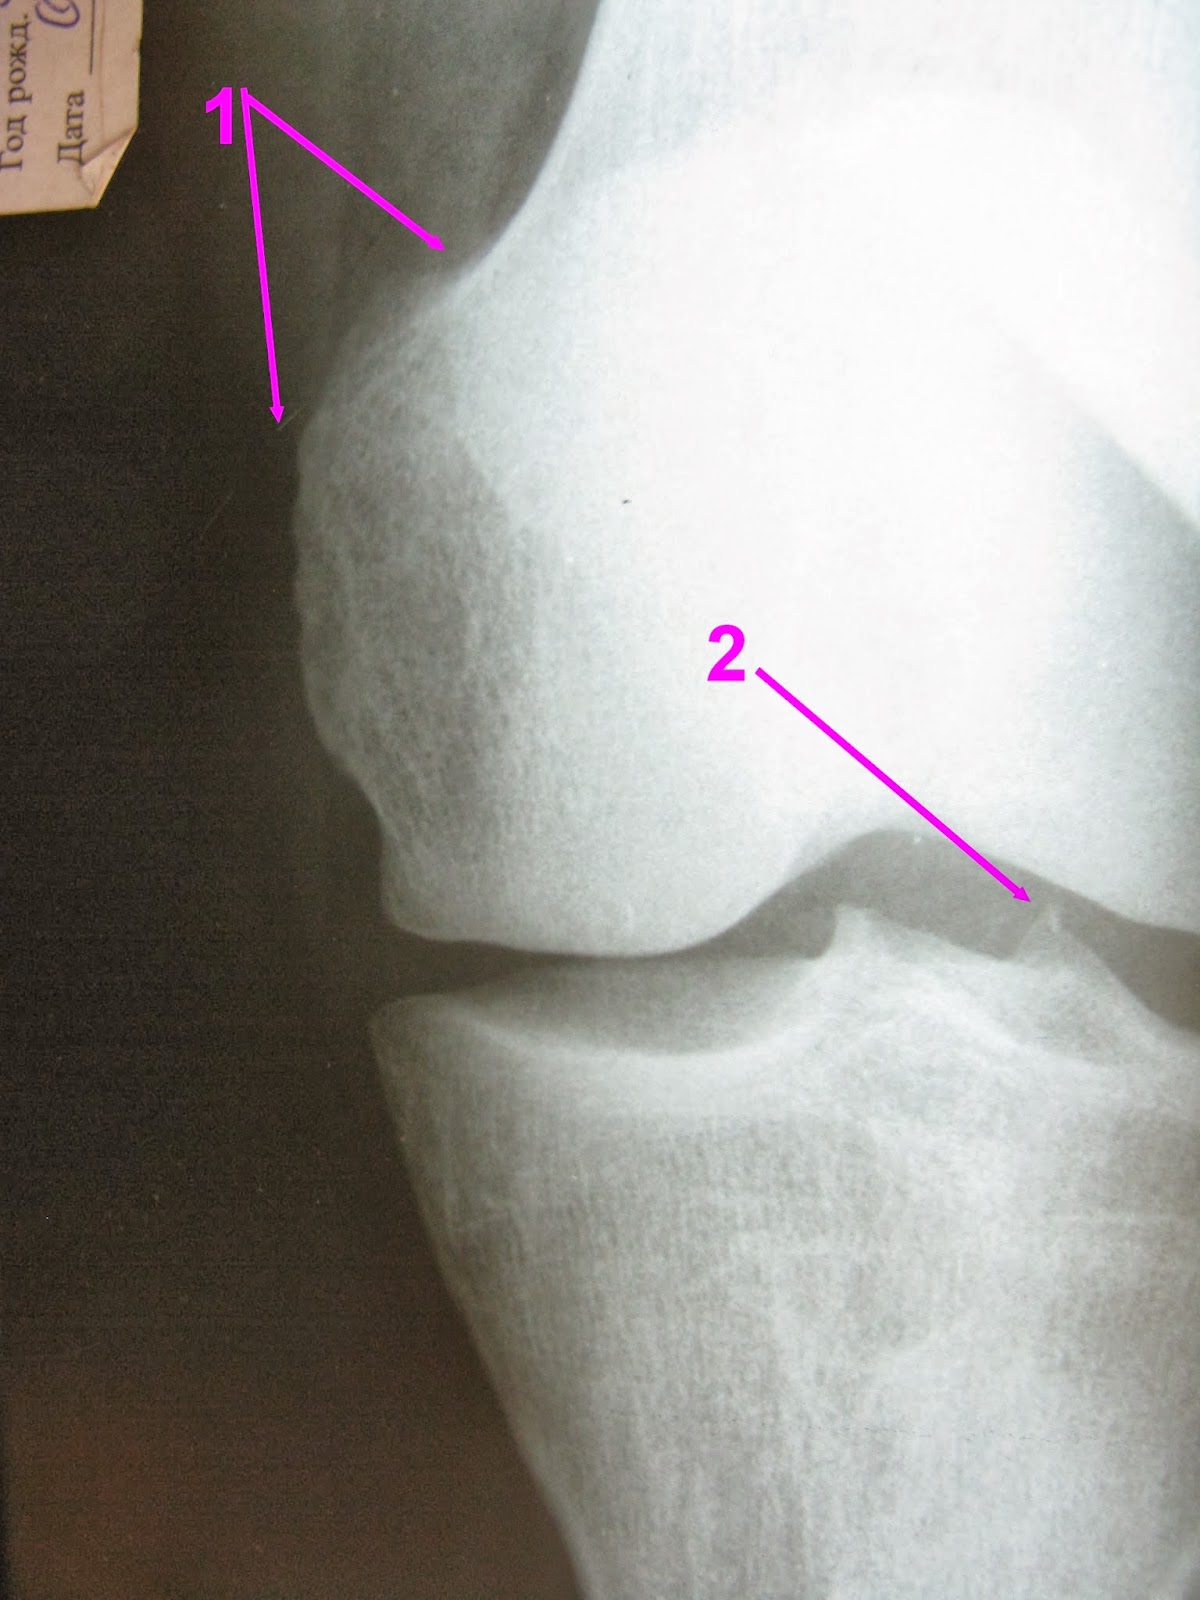 В суставе мыщелок. Перелом межмыщелкового возвышения рентген. Остеофиты коленного сустава рентген. Краевой перелом межмыщелкового возвышения большеберцовой кости. Межмыщелковое возвышение коленного сустава.